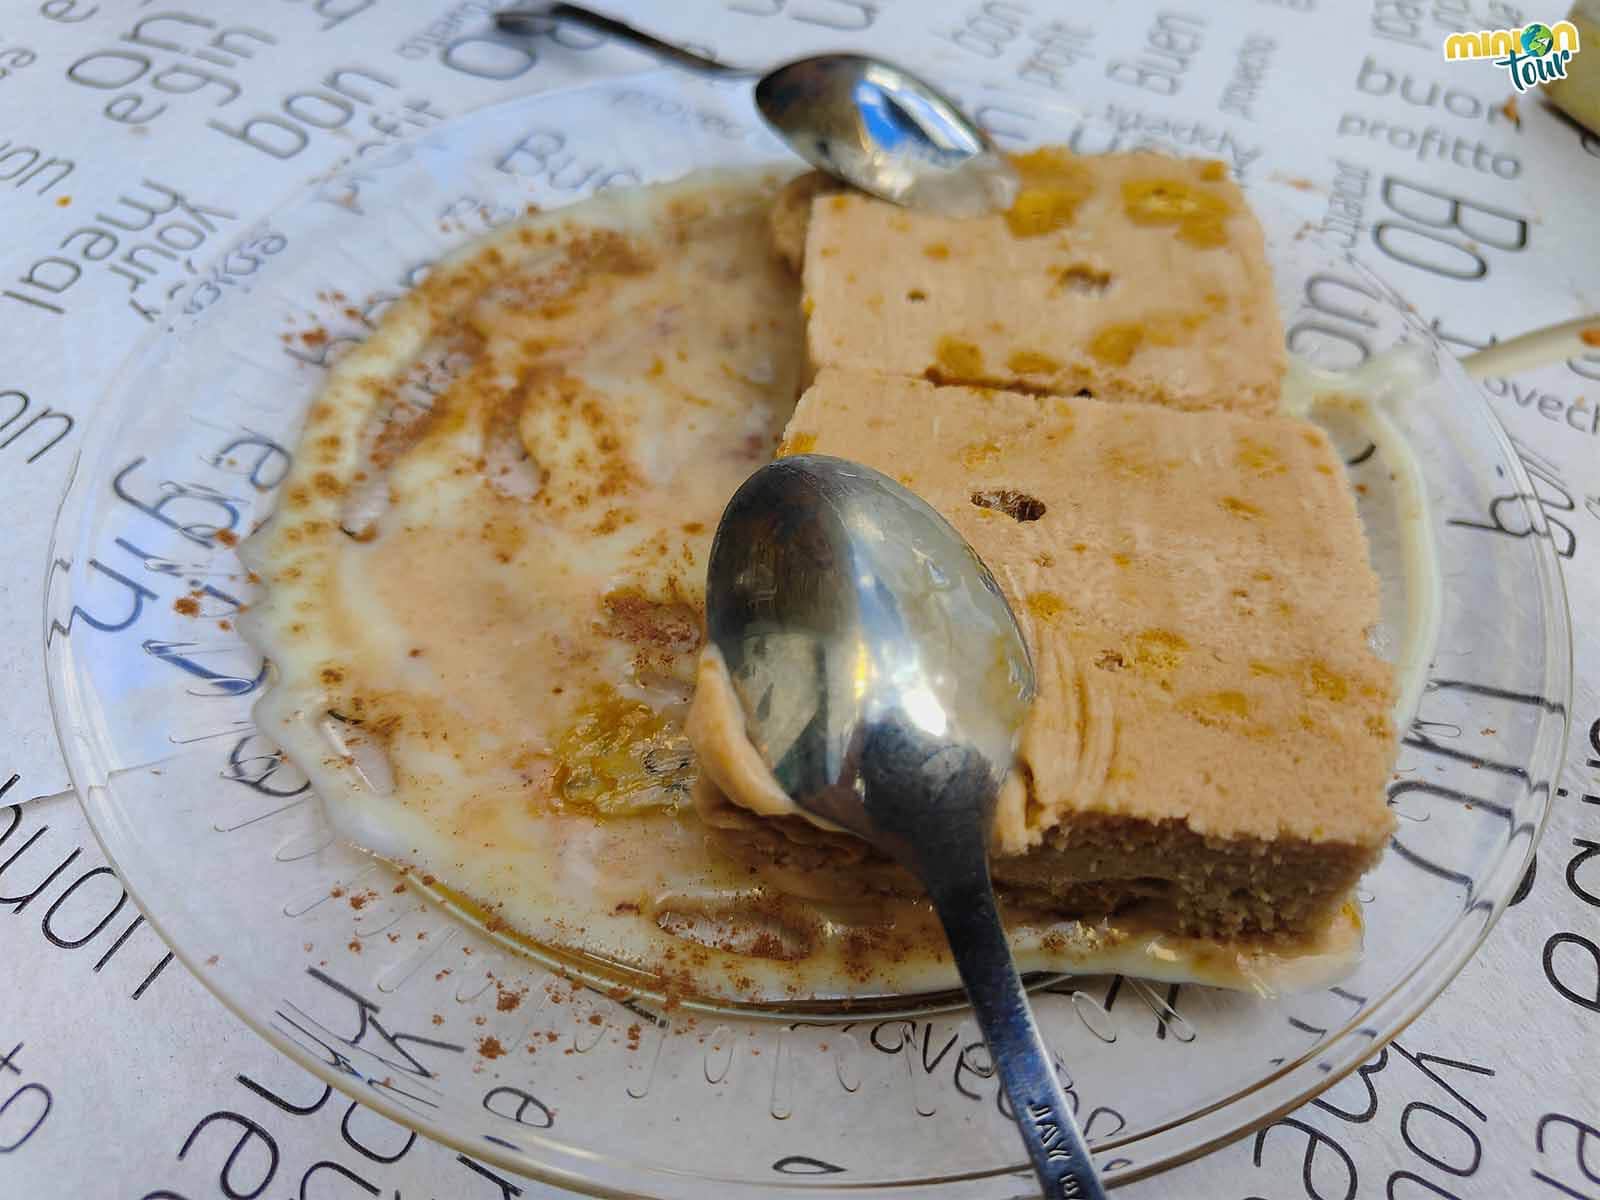 El helado de turrón del Café Bar Antón es lo más